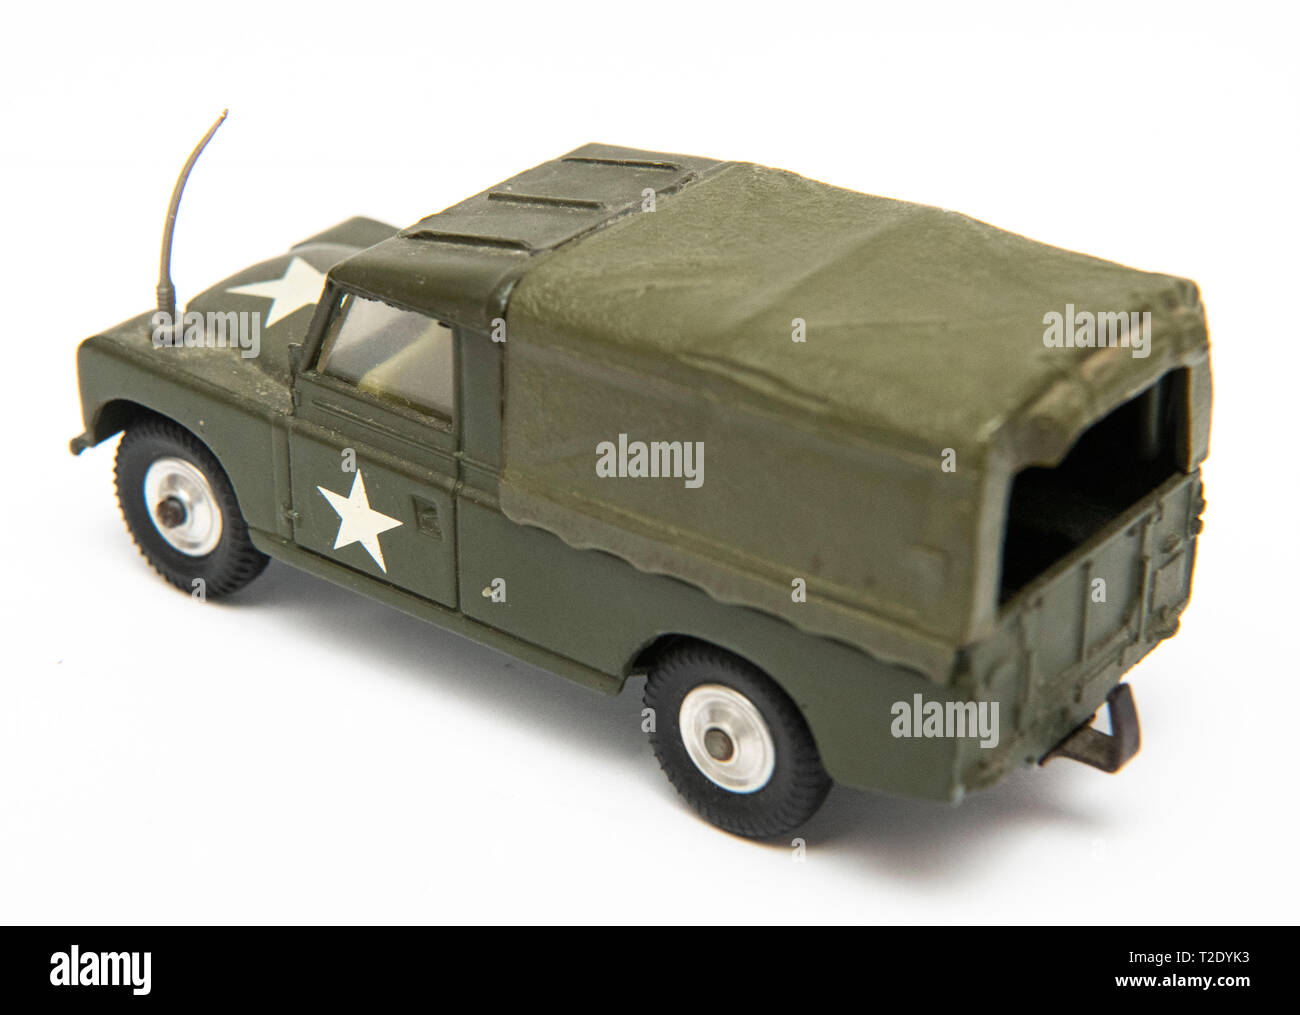 1/43 scale vintage Corgi Toys modèle no 357 Land Rover 109 WB US Army calibre transporteur sur un fond blanc Banque D'Images